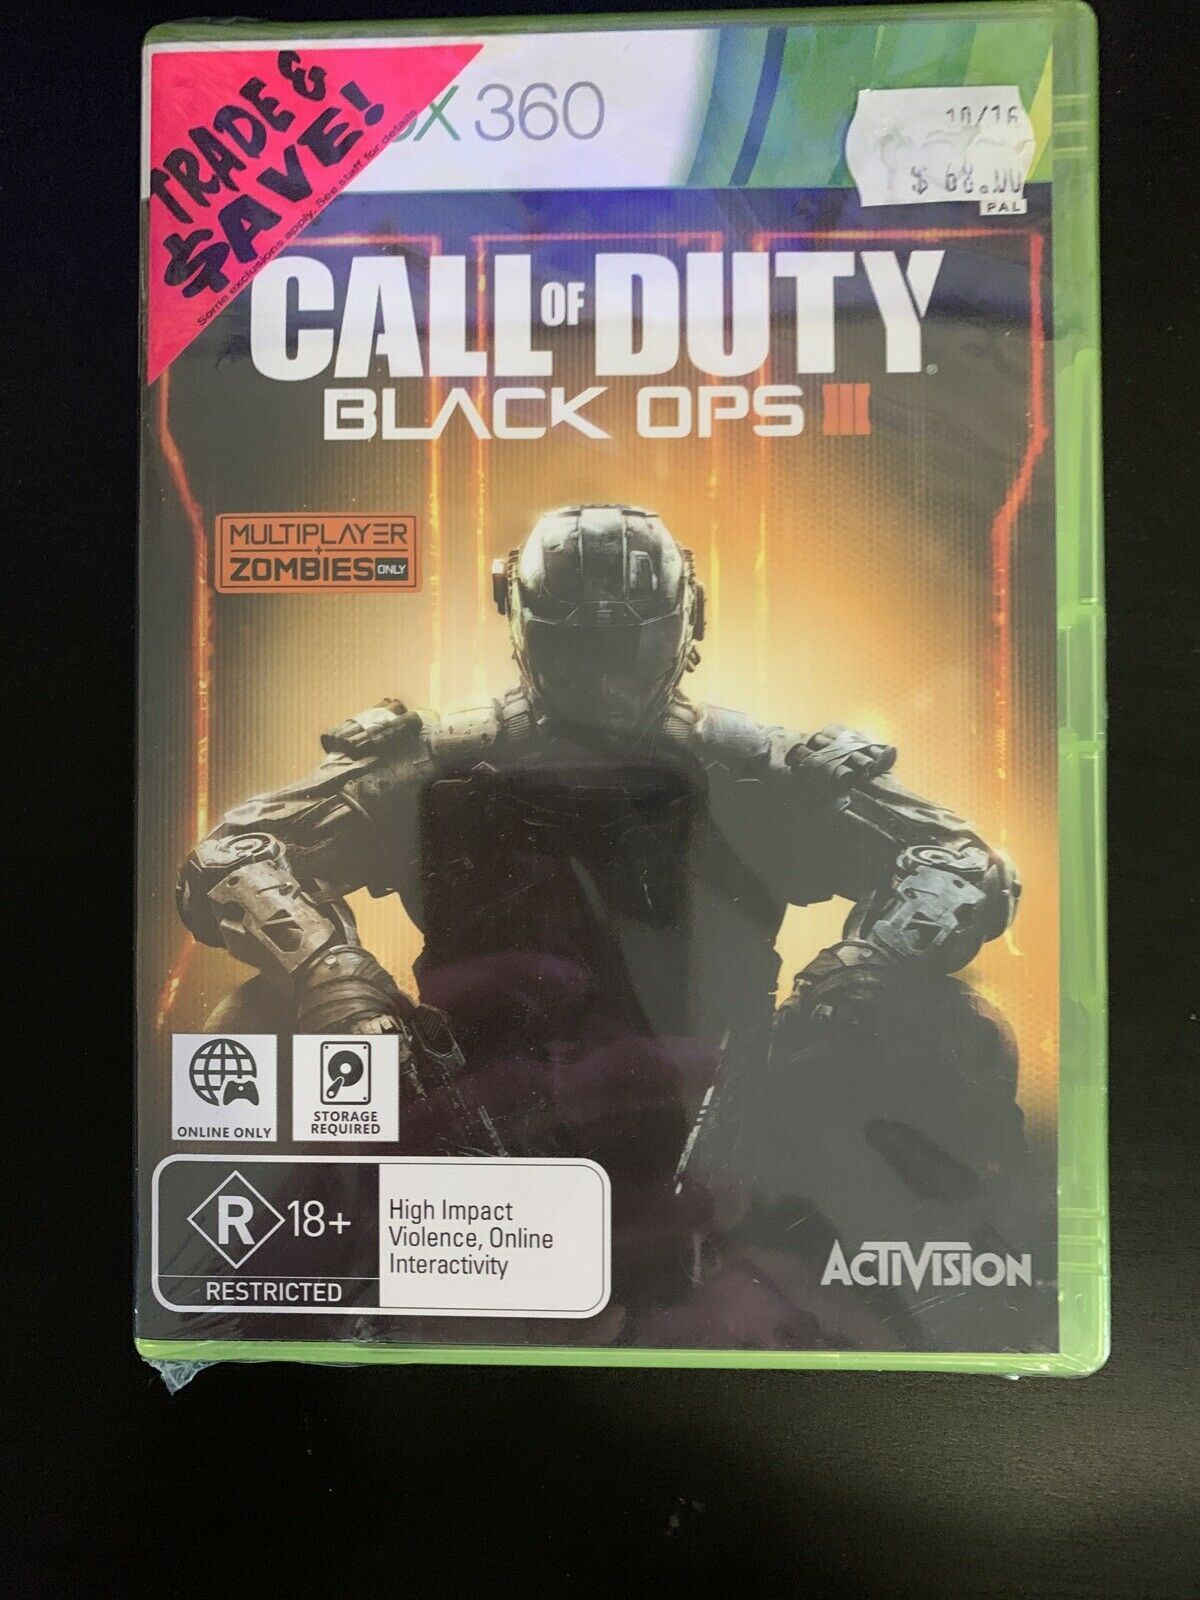 *New & Sealed* Call of Duty Black Ops III - Microsoft Xbox 360 Game